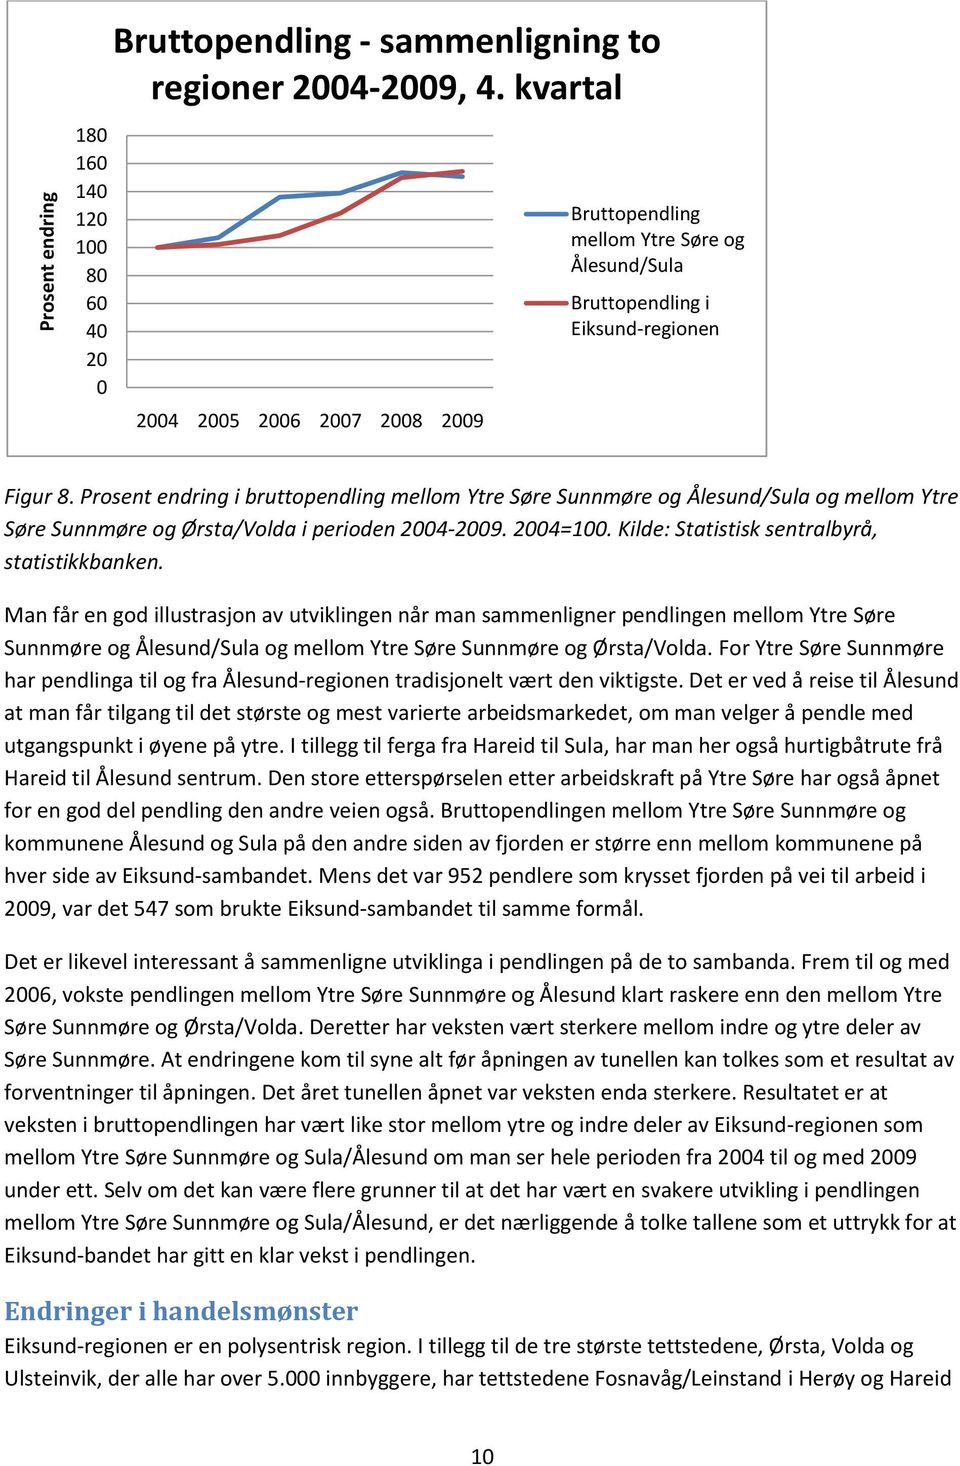 Prosent endring i bruttopendling mellom Ytre Søre Sunnmøre og Ålesund/Sula og mellom Ytre Søre Sunnmøre og Ørsta/Volda i perioden 2004-2009. 2004=100. Kilde: Statistisk sentralbyrå, statistikkbanken.